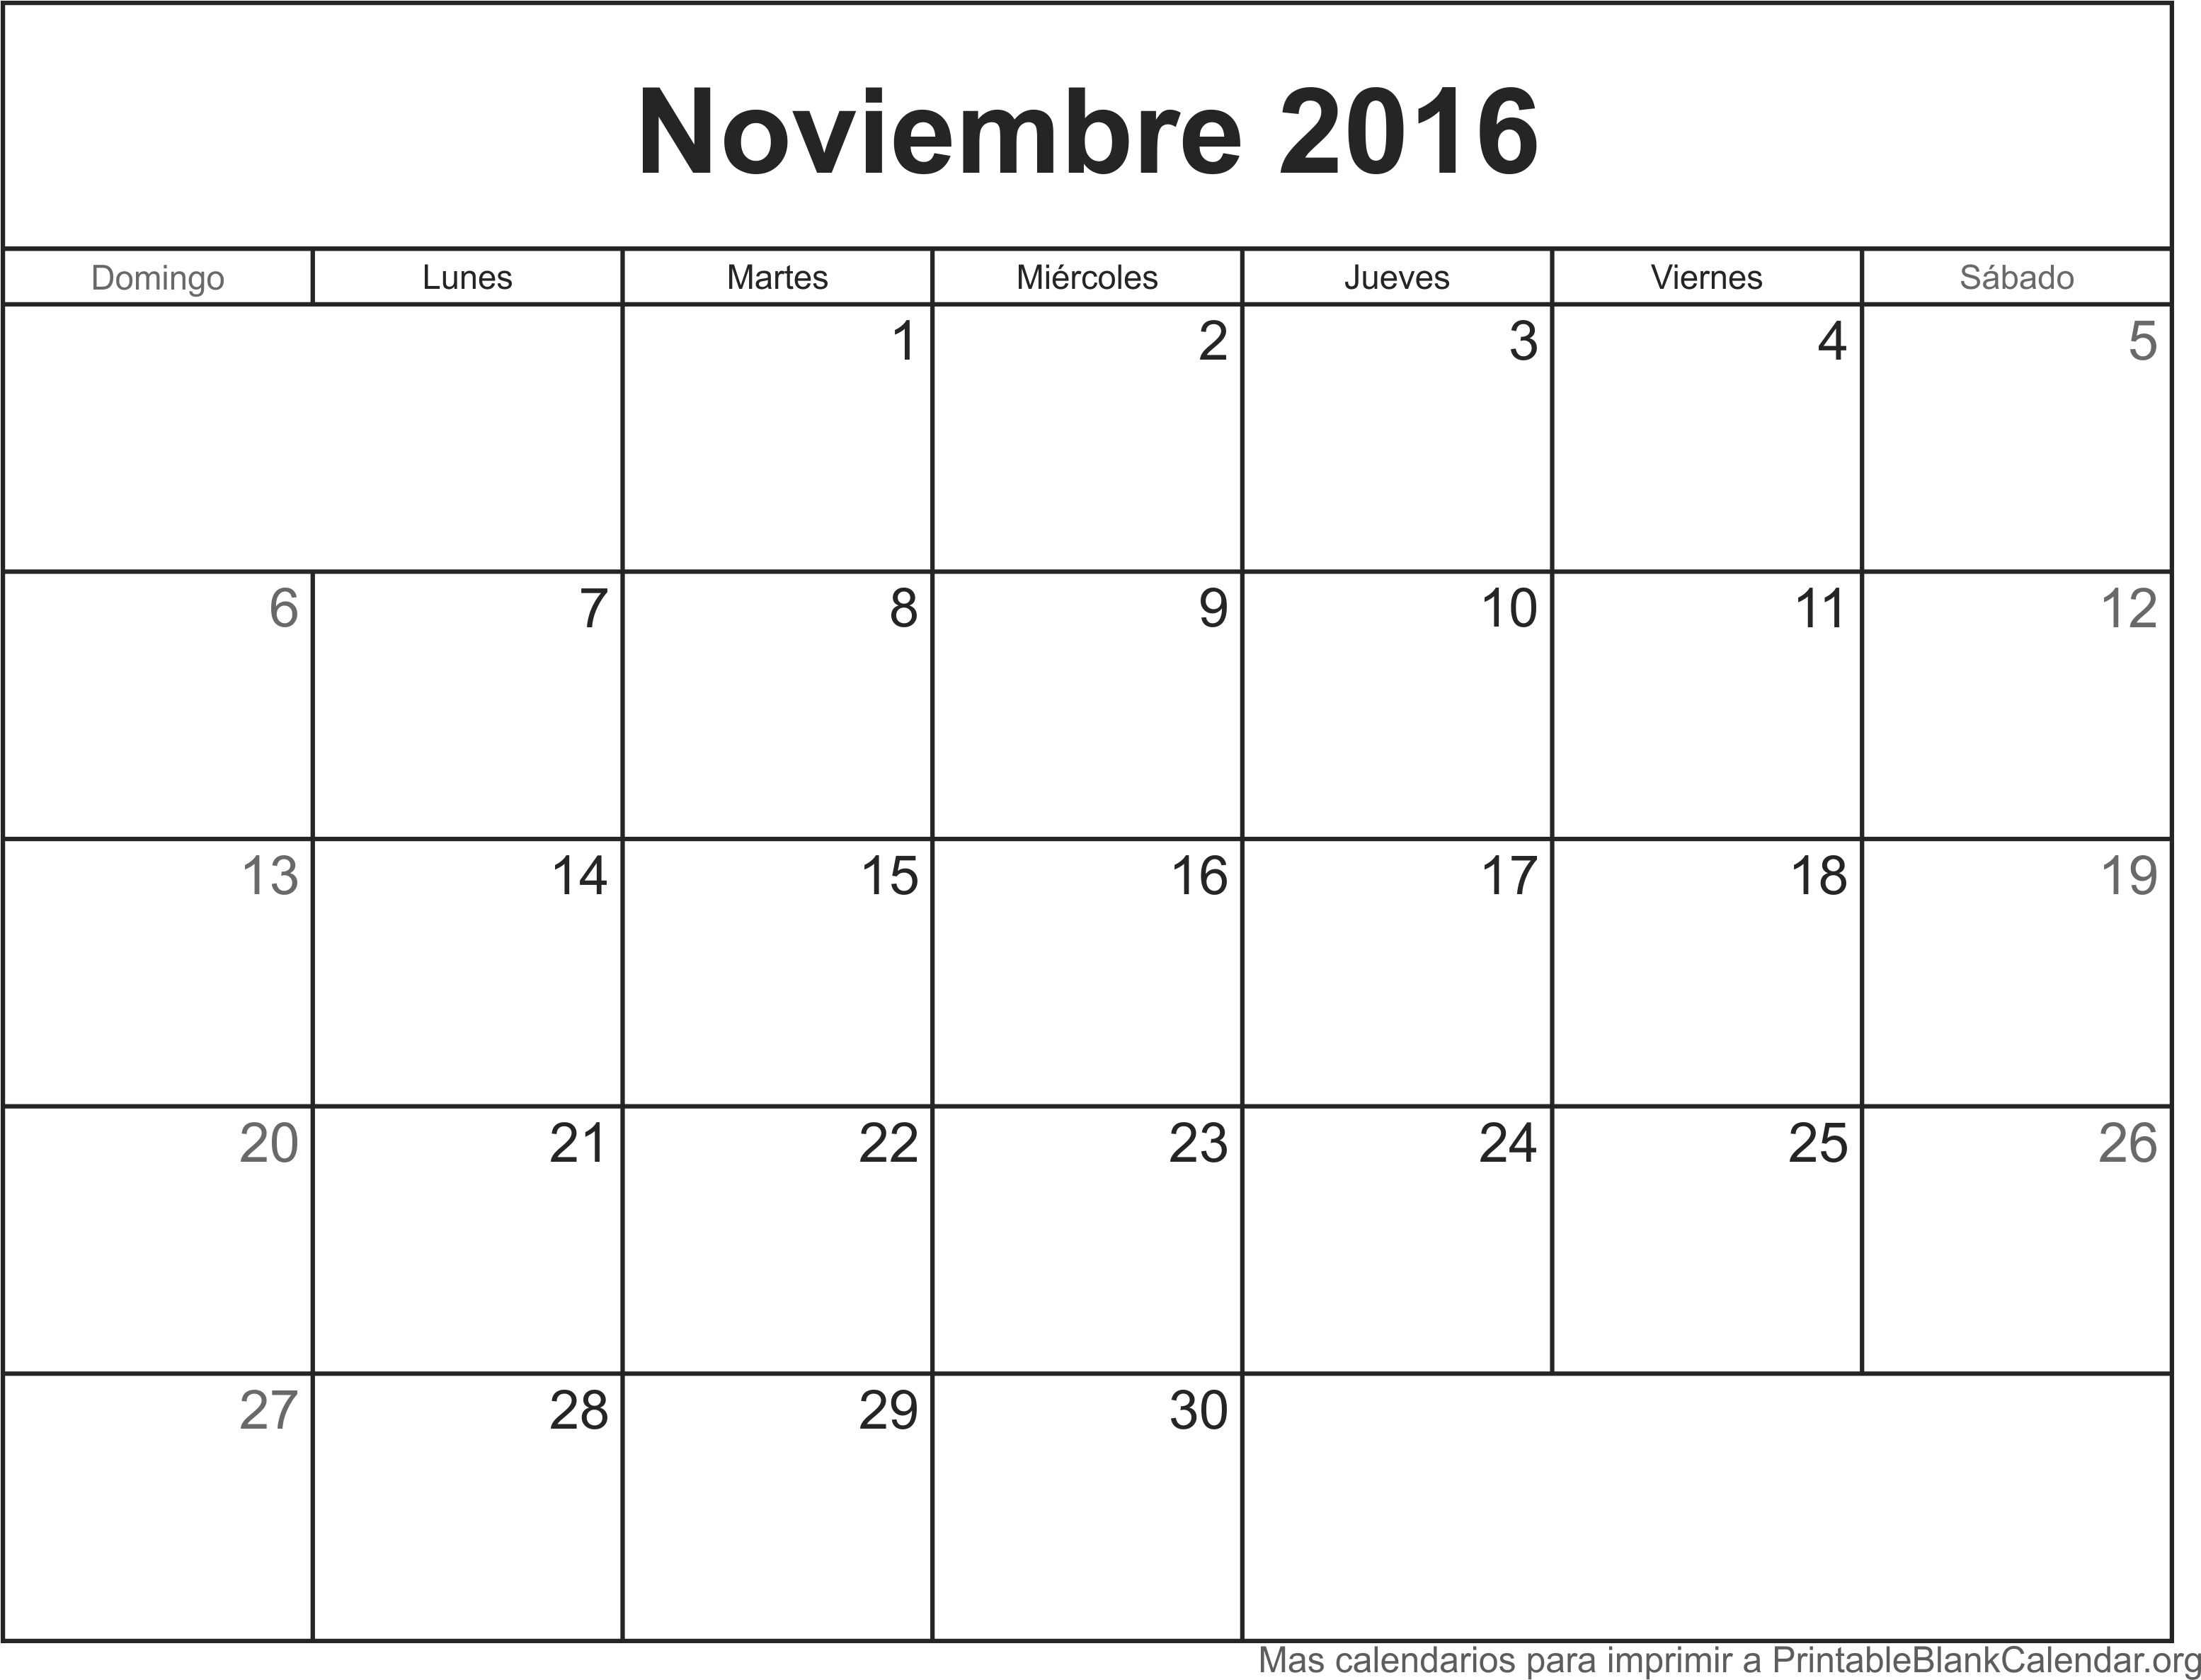 Nov 2016 calendario